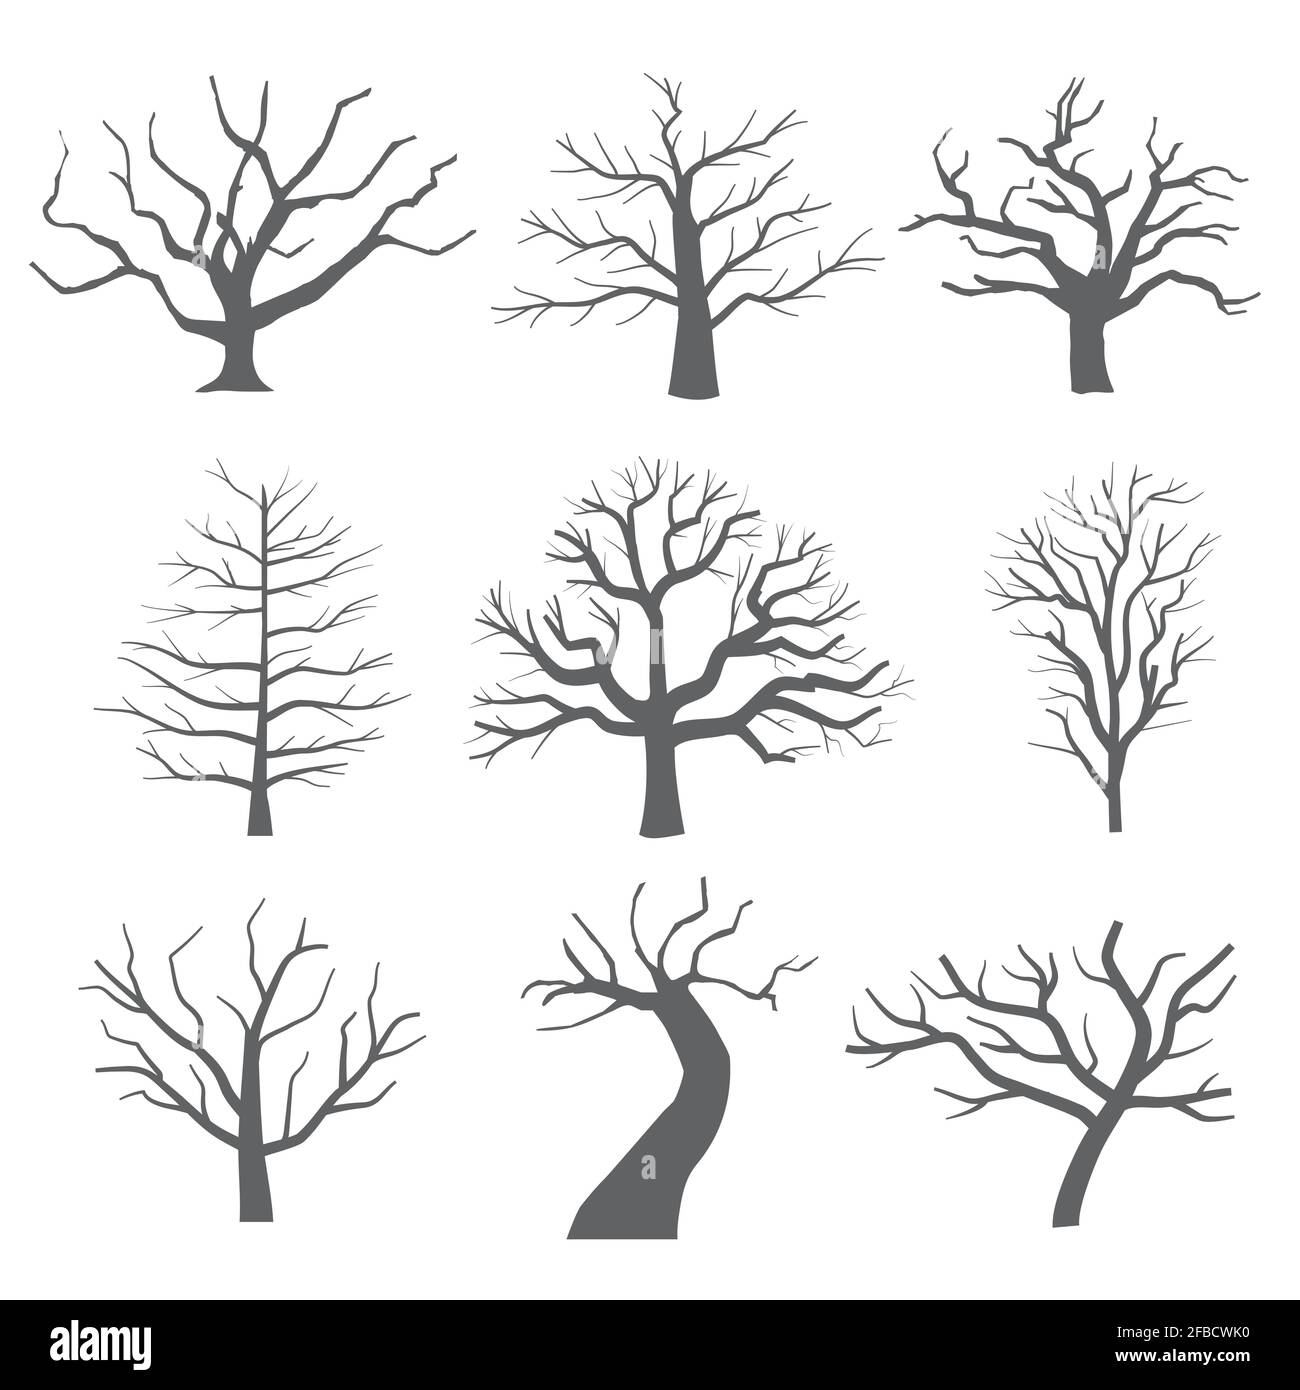 Abgestorbene Baumsilhouetten. Sterbende schwarze beängstigende Bäume Wald Vektor-Illustration. Natürlicher sterbender alter Baum des Satzes Stock Vektor